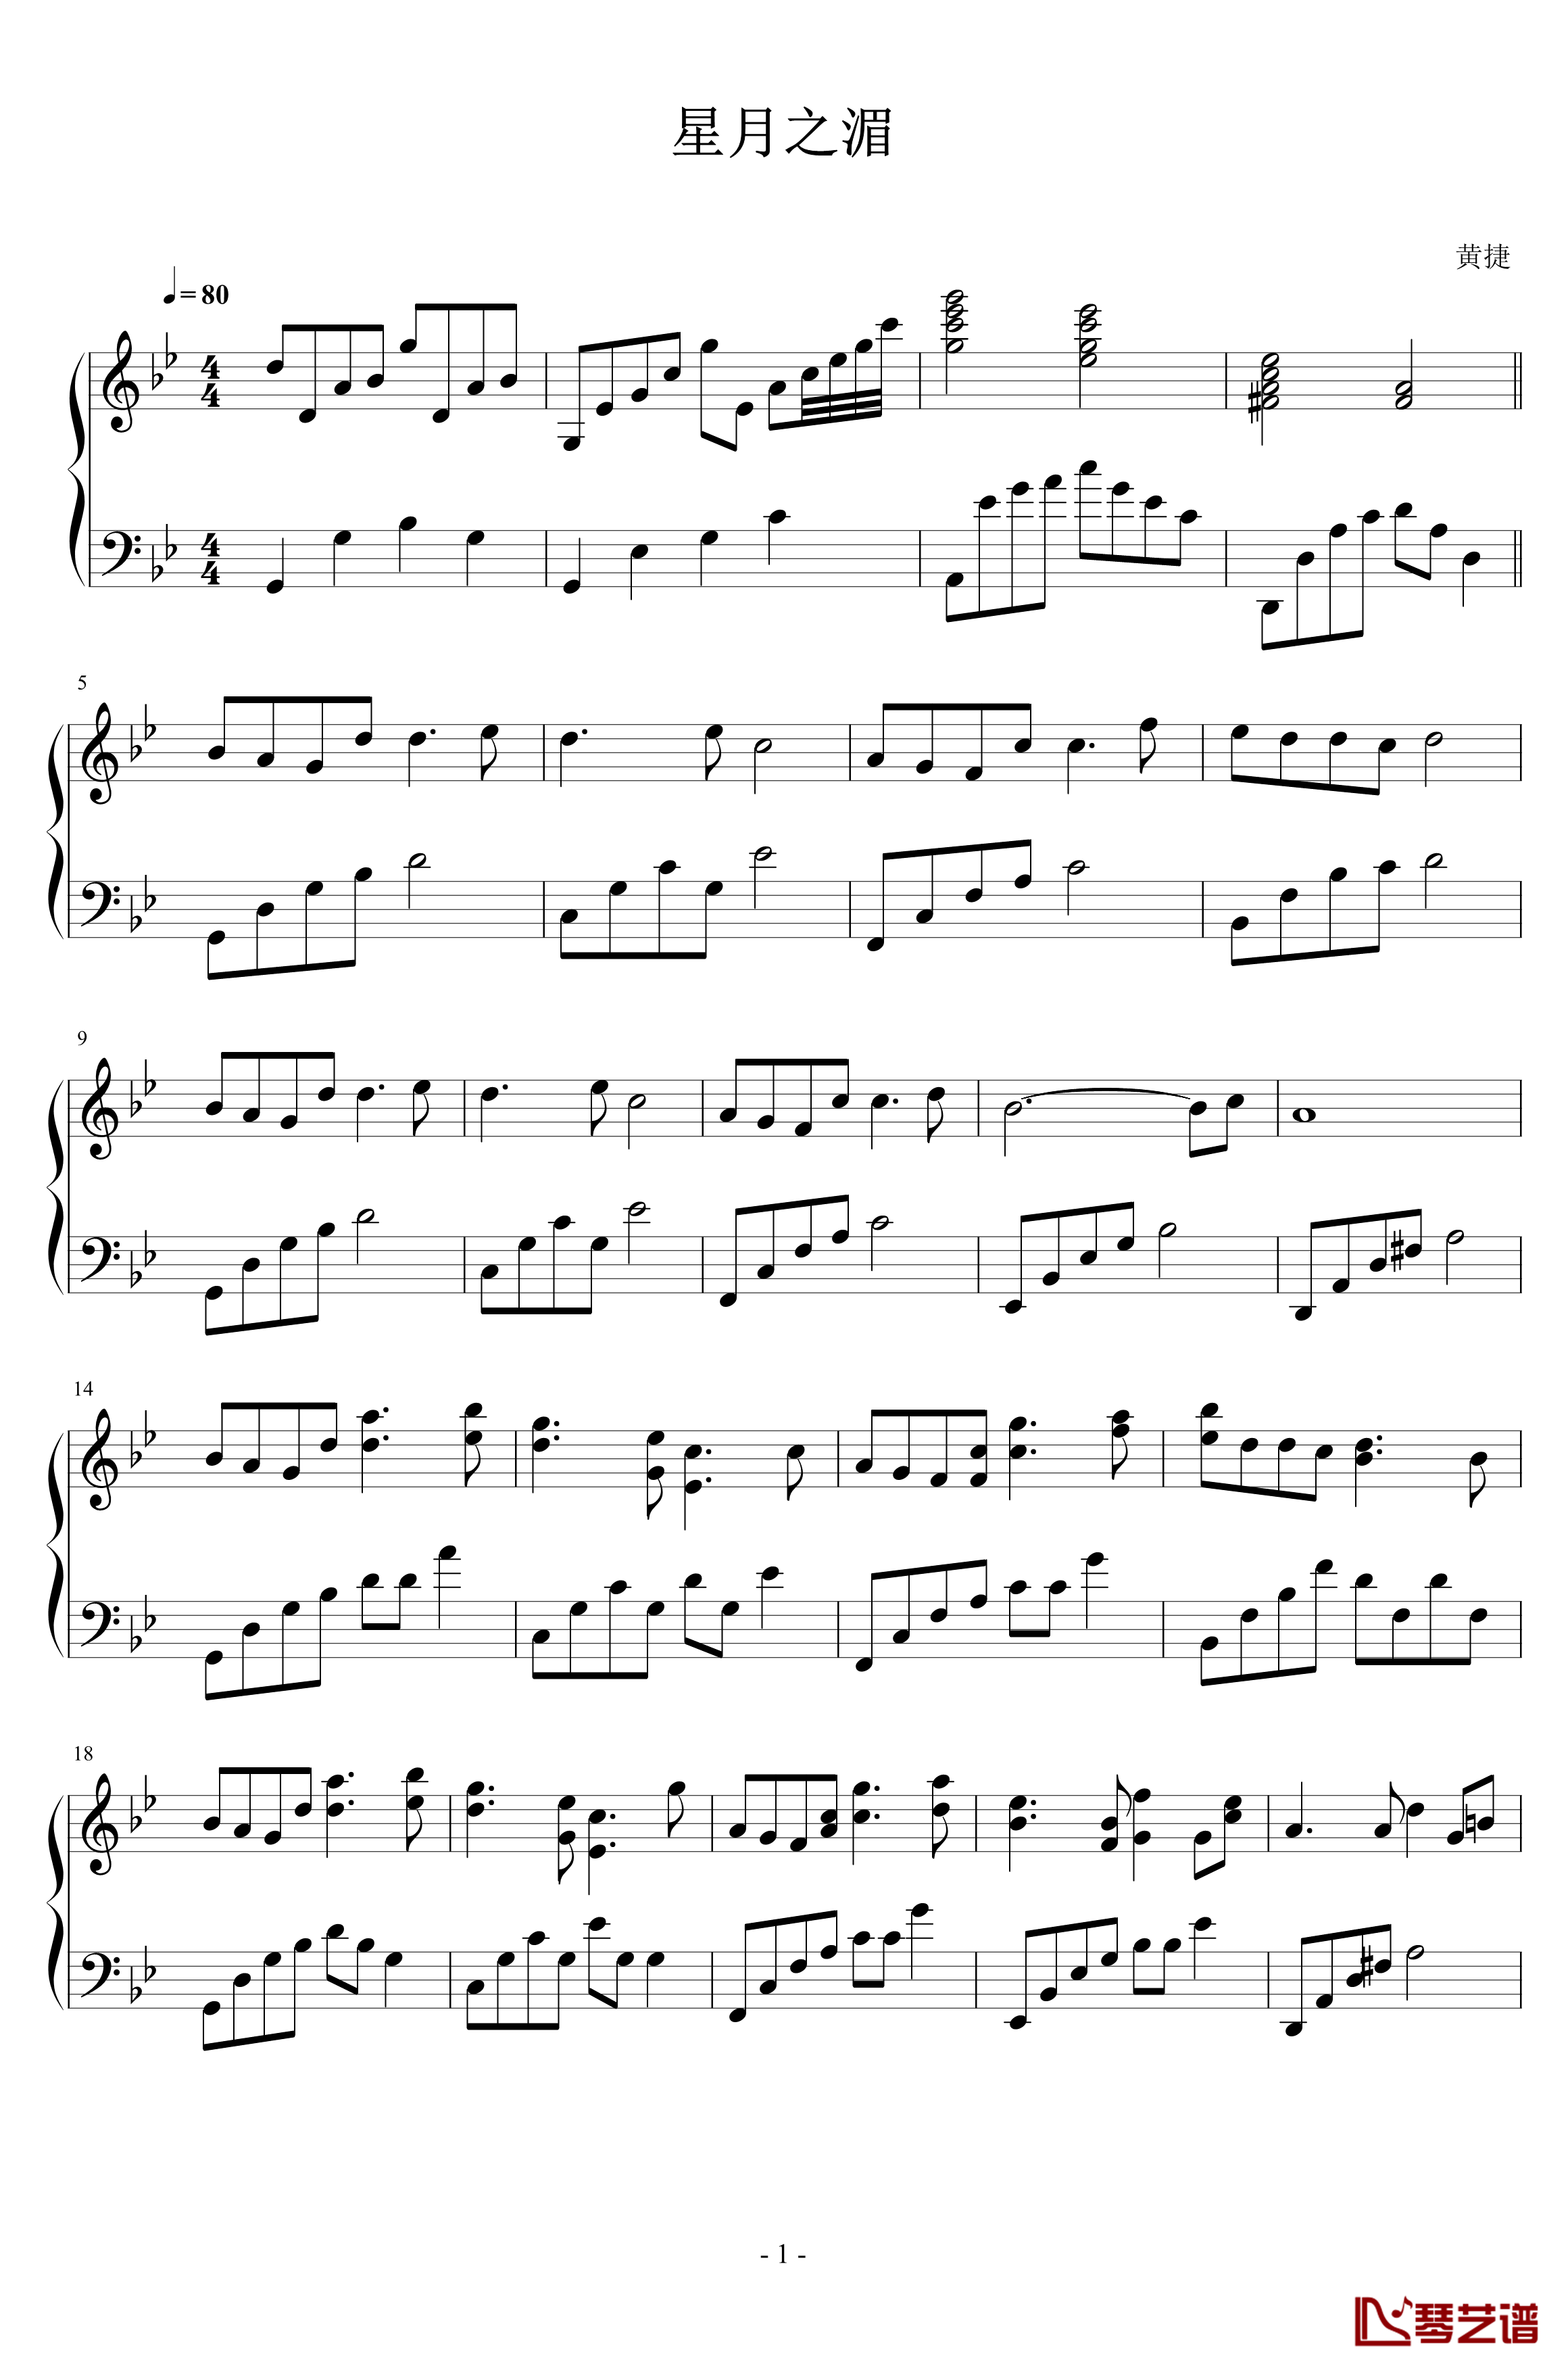 星月之湄钢琴谱-黄捷1